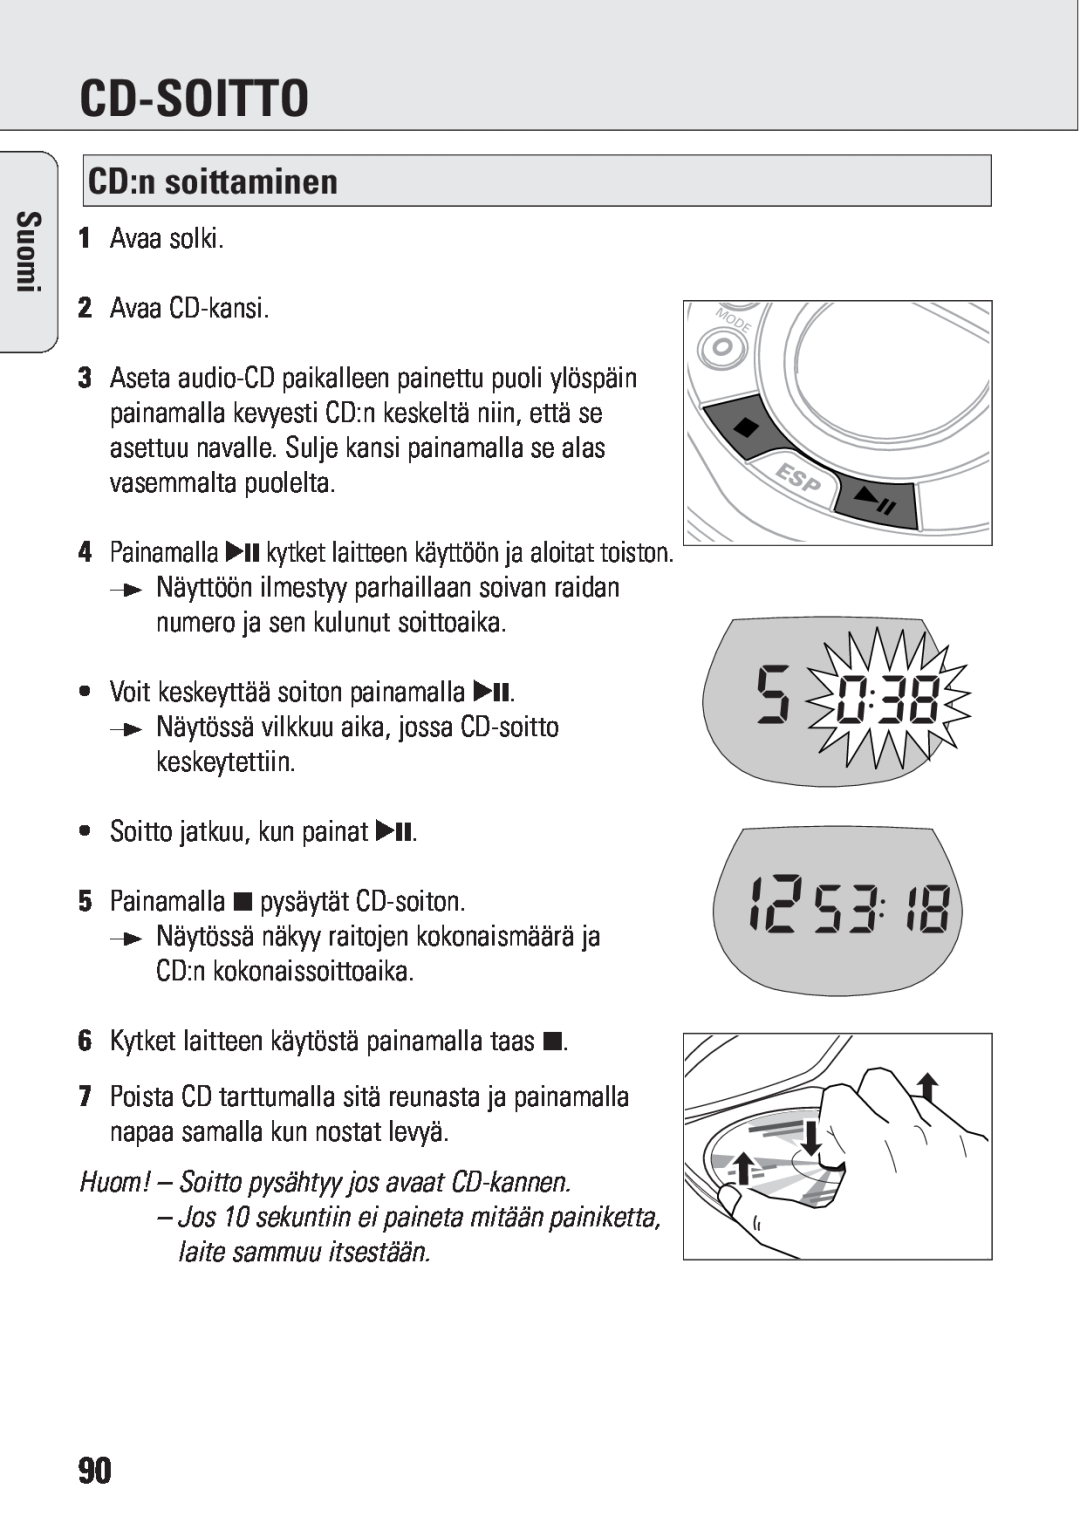 Philips ACT 7583 manual Cd-Soitto, CD:n soittaminen, Suomi, Huom! – Soitto pysähtyy jos avaat CD-kannen 